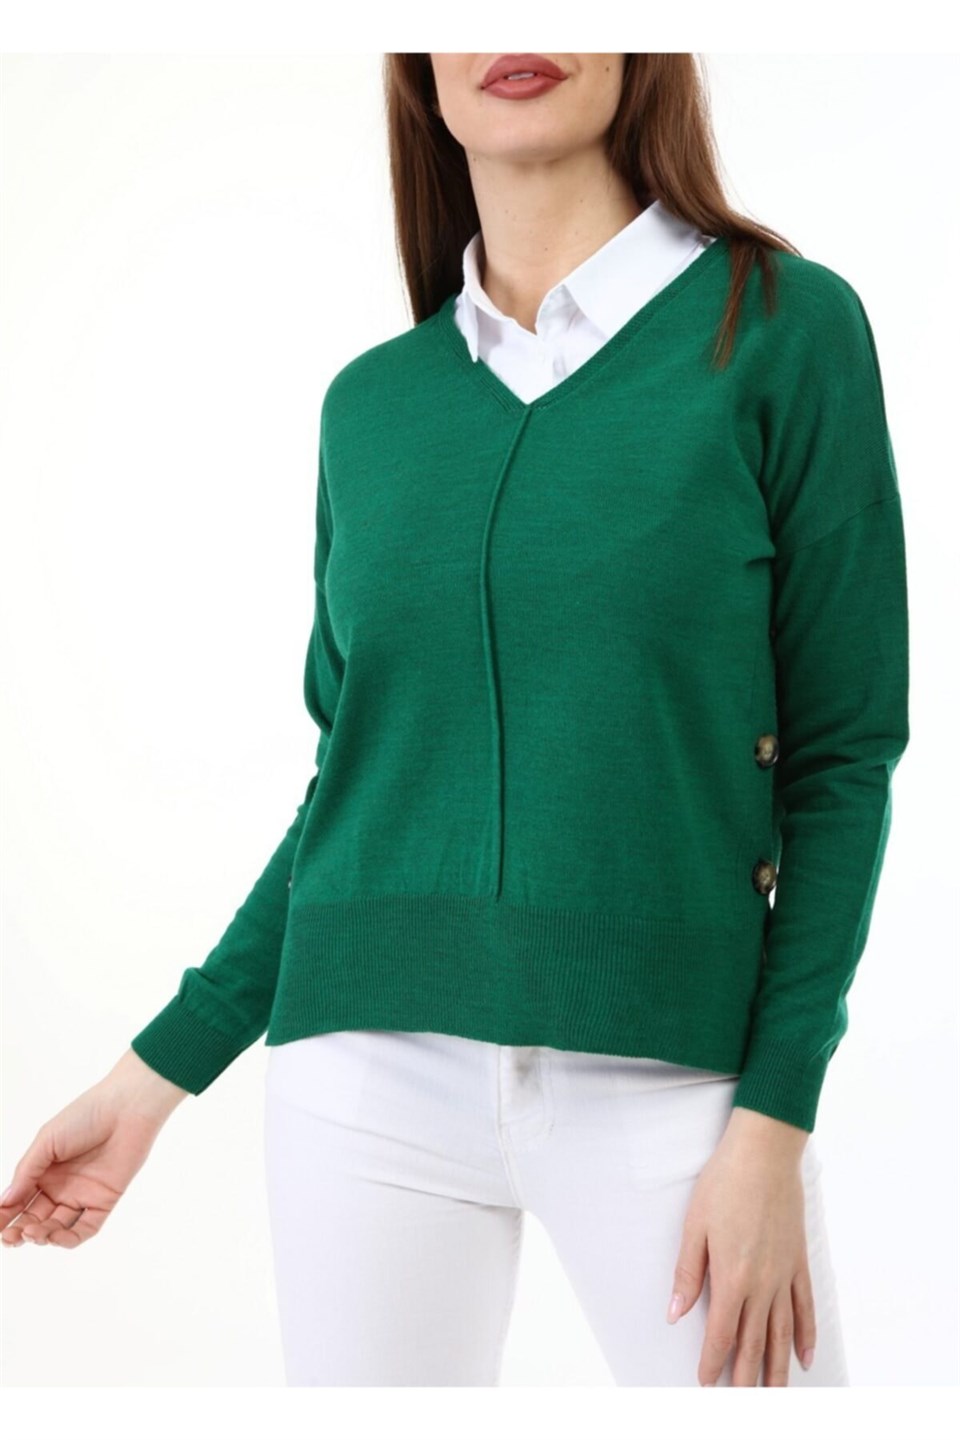 Kadın Yandan Düğmeli Gömlek Yaka Yeşil Kazak | aqefashion.com